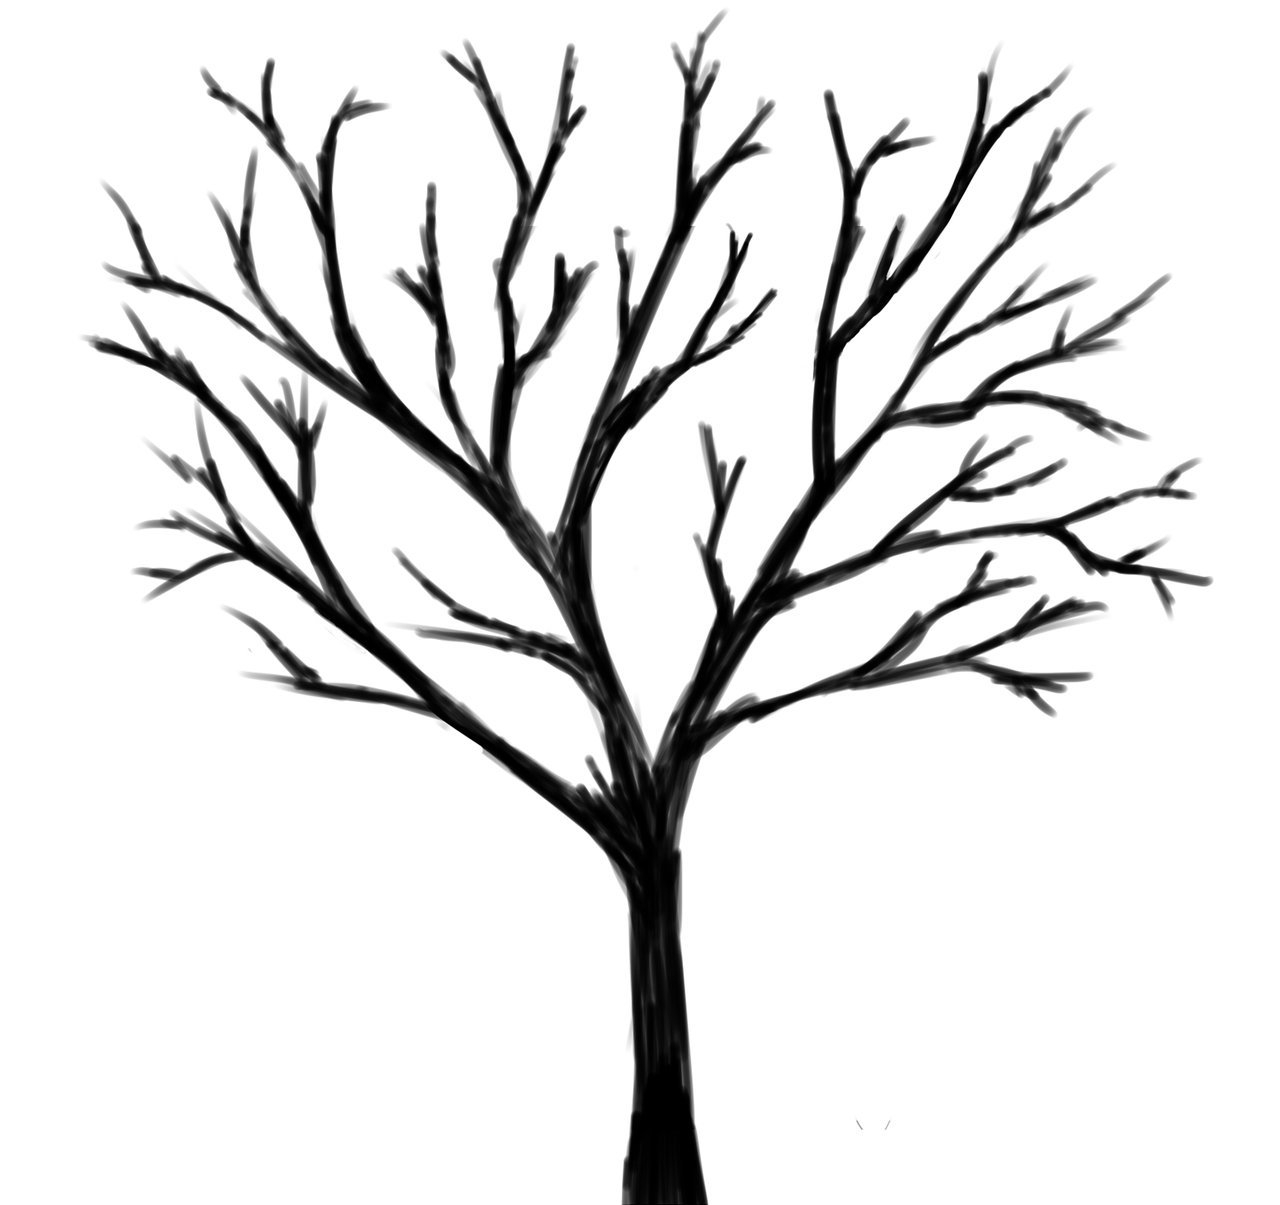 Раскраски Дерево без листьев